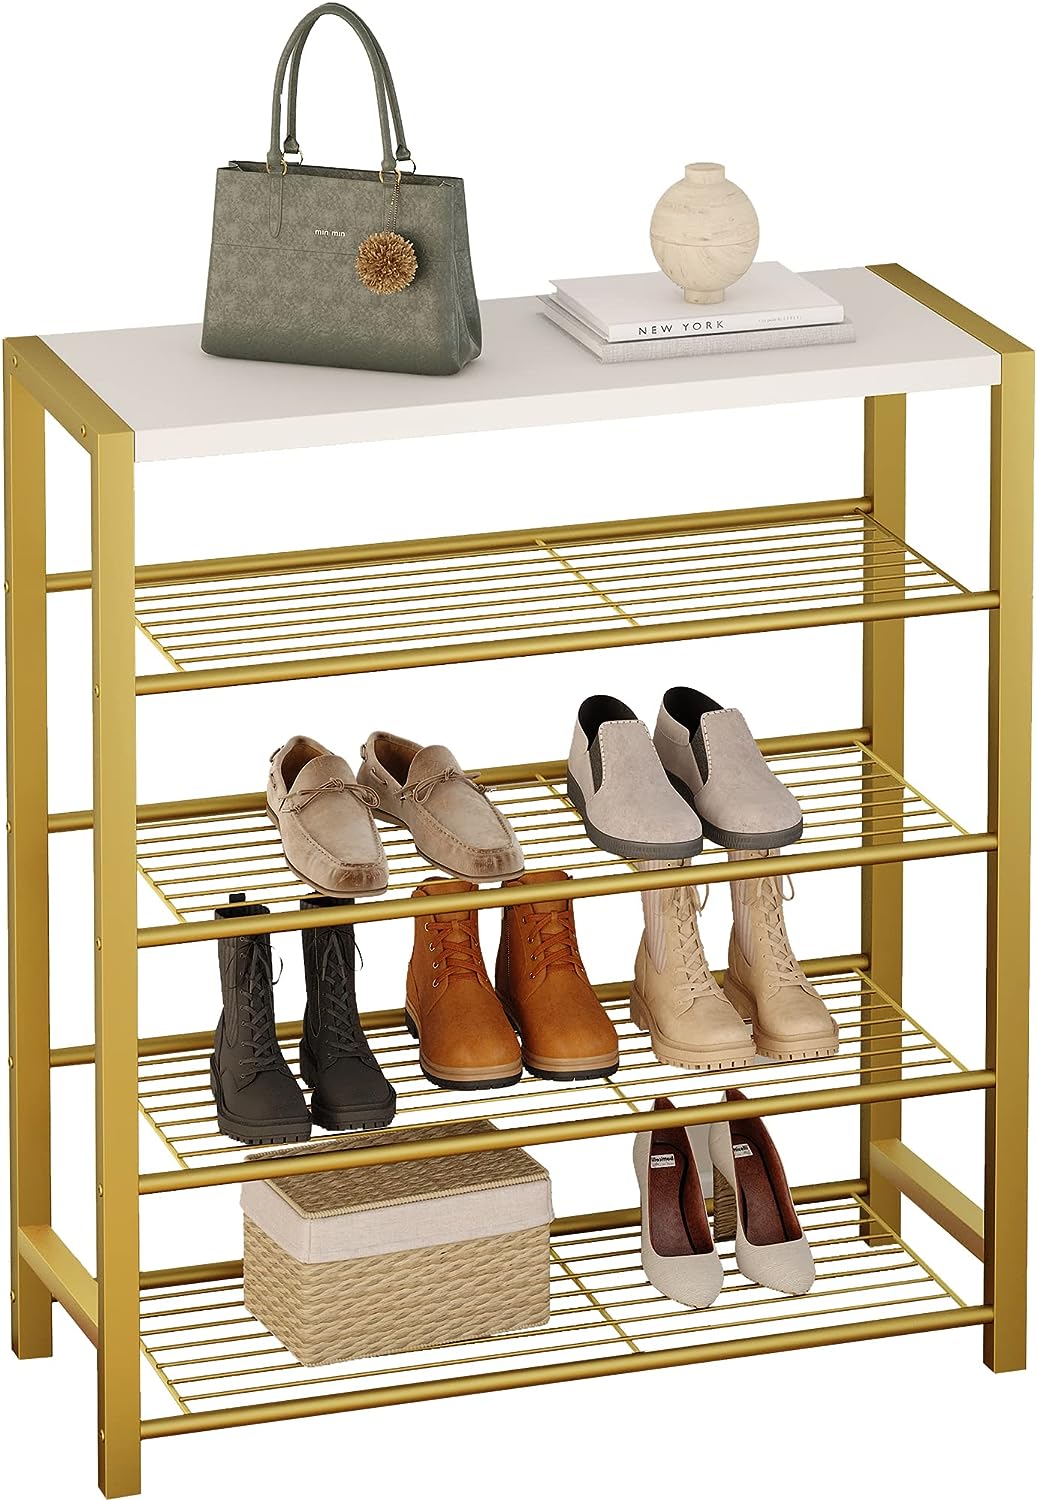 Yusong Shoe Rack, 6 Tier Shoe Organizer Storage for Closet